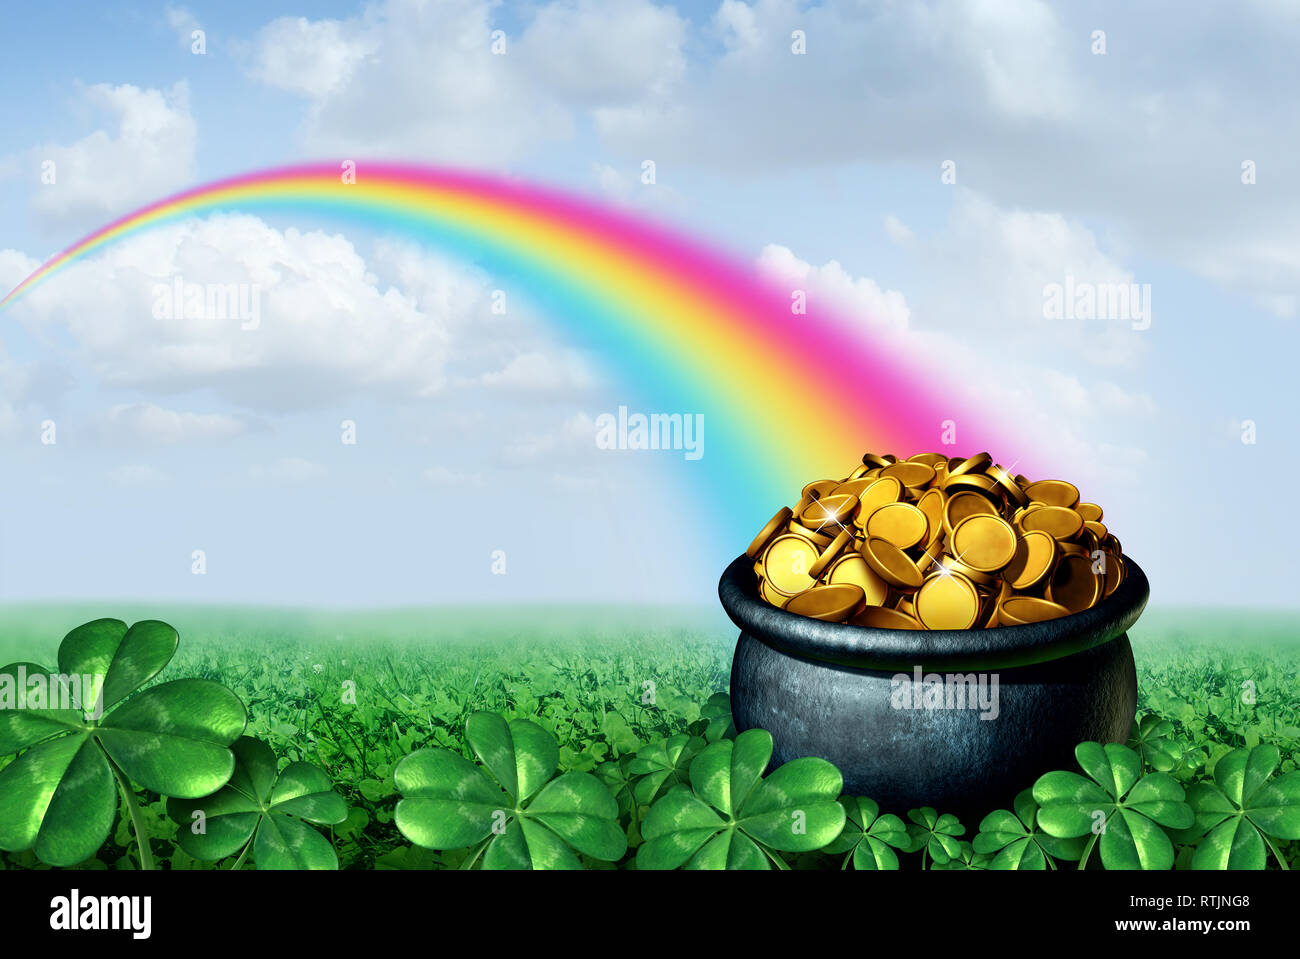 Topf voll Gold am Ende des Regenbogens Saint Patricks Day Konzept mit einem grünen Klee Feld auf einem goldenen Schatz als Symbol für den Frühling und Glück. Stockfoto